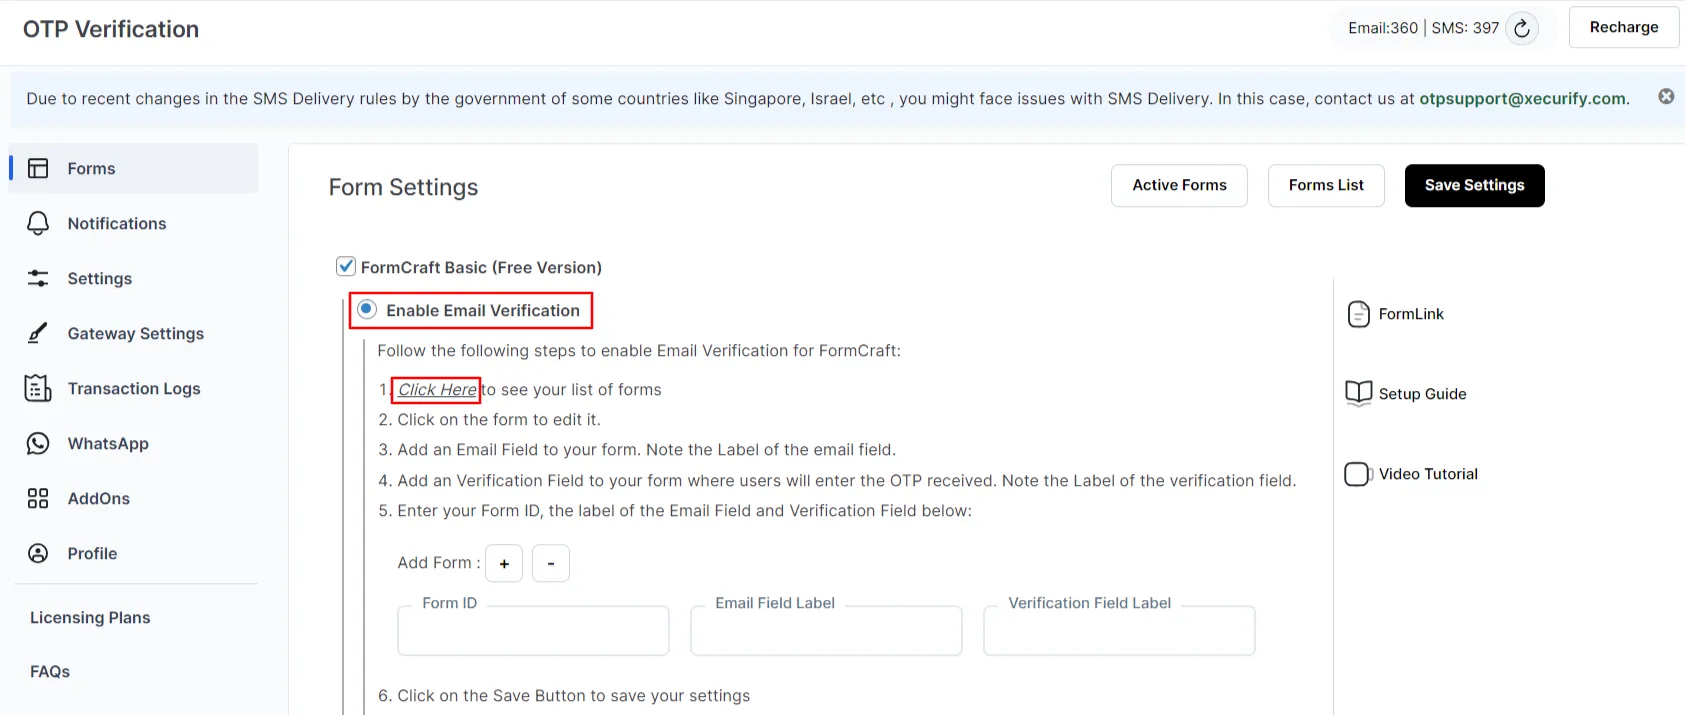 Verificación otp gratuita de formcraft básico: habilitar la verificación por correo electrónico